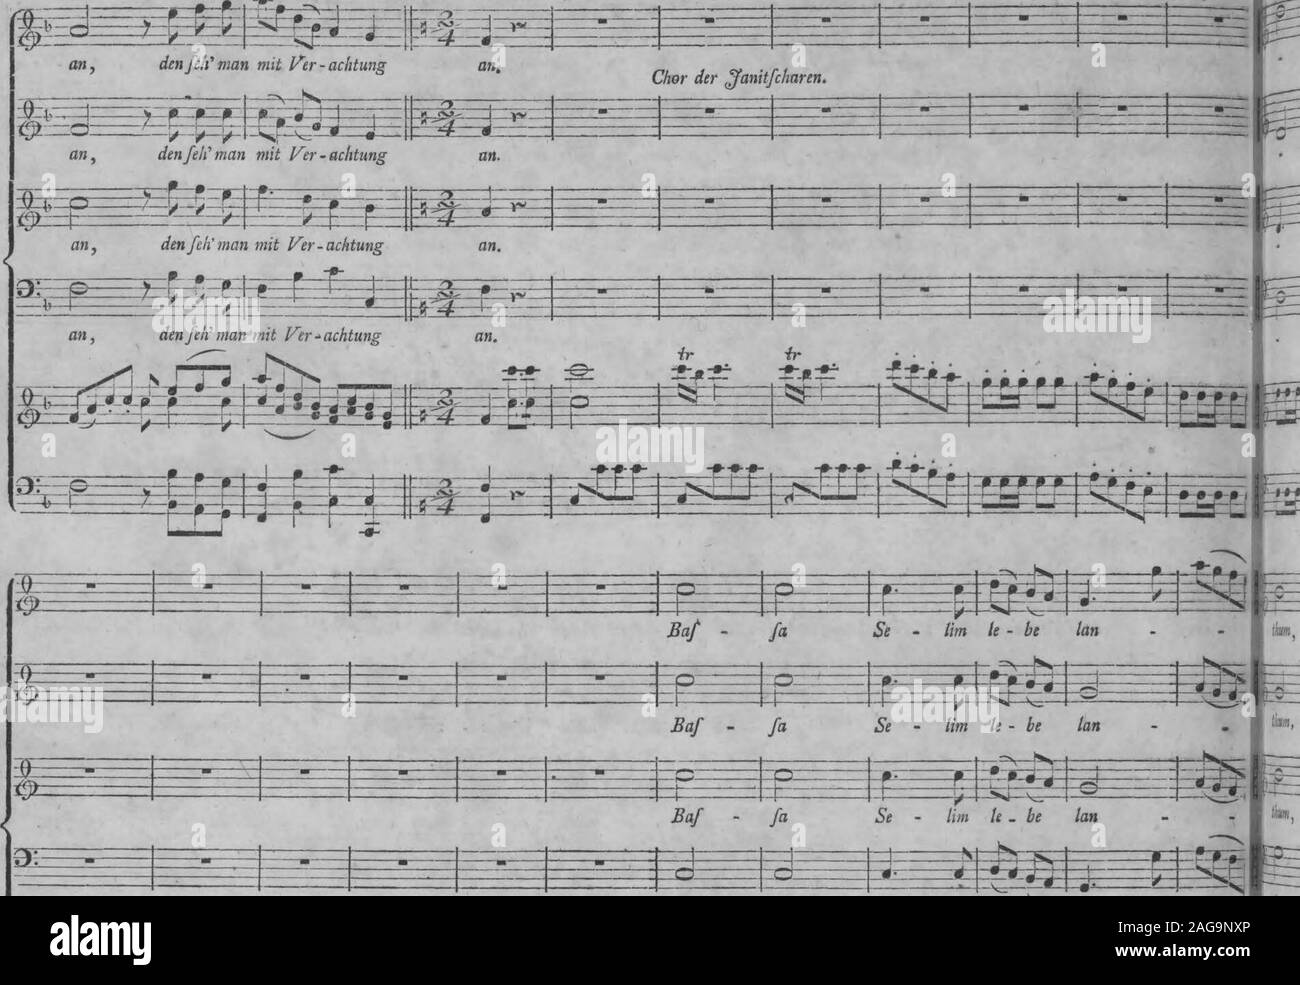 . Die Entfuhrung aus dem Serail : ein komisches Singspiel en drey Aufzugen (1796). s^Ü^üüHÜ kann, den/eh n ^ I / -0--£9- .7*- -0- -*- -fS- -®- | I | 1&GT; Mozart, Entführ, ans dem Serail, =5^= 150 Allegro vivace. Baf fa Se - lim le - ser tan Foto de stock